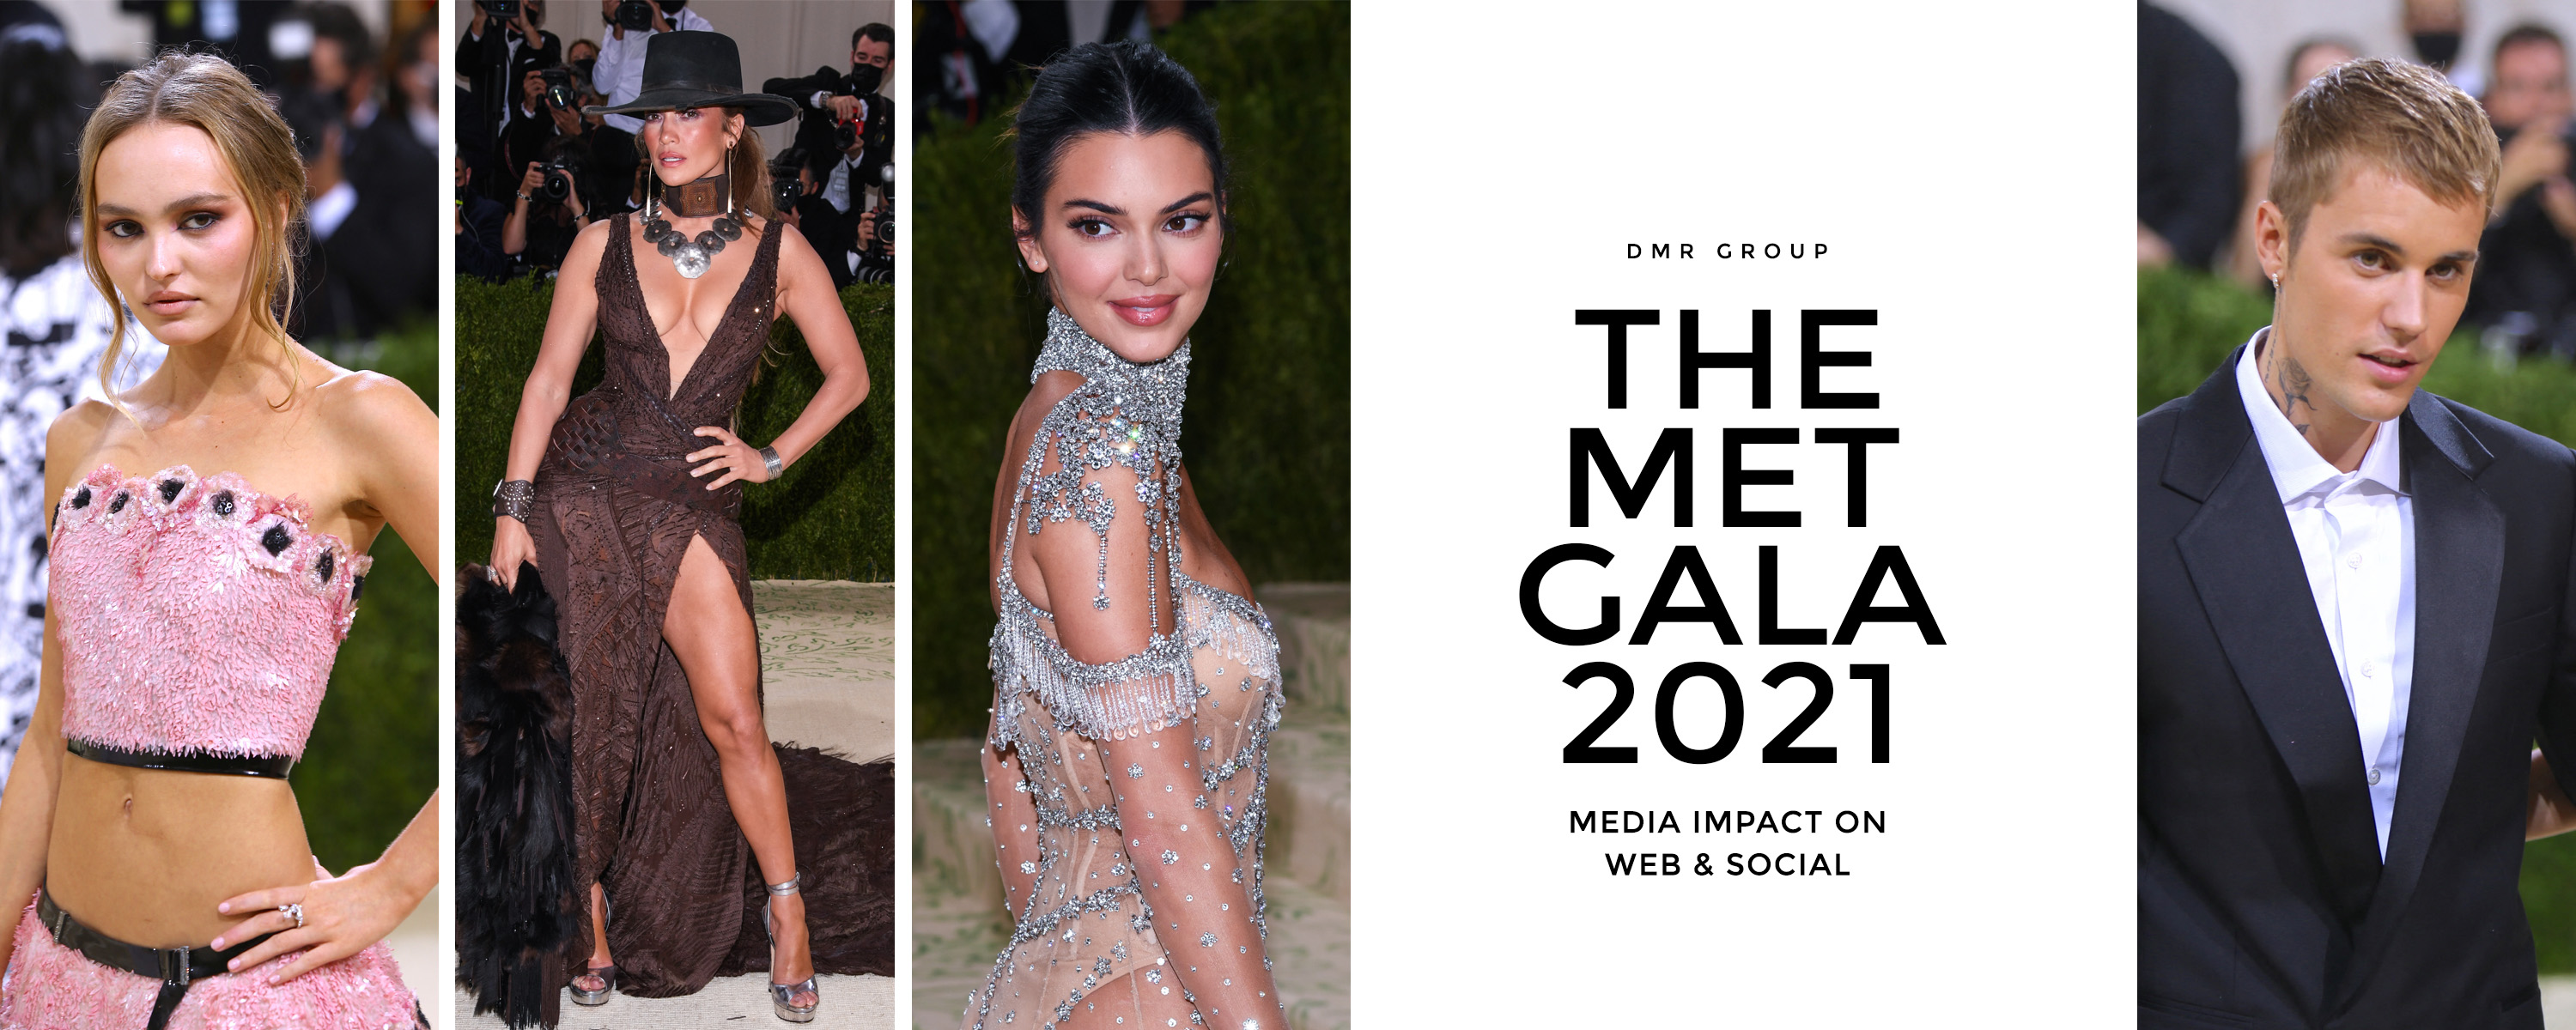 The MET Gala 2021